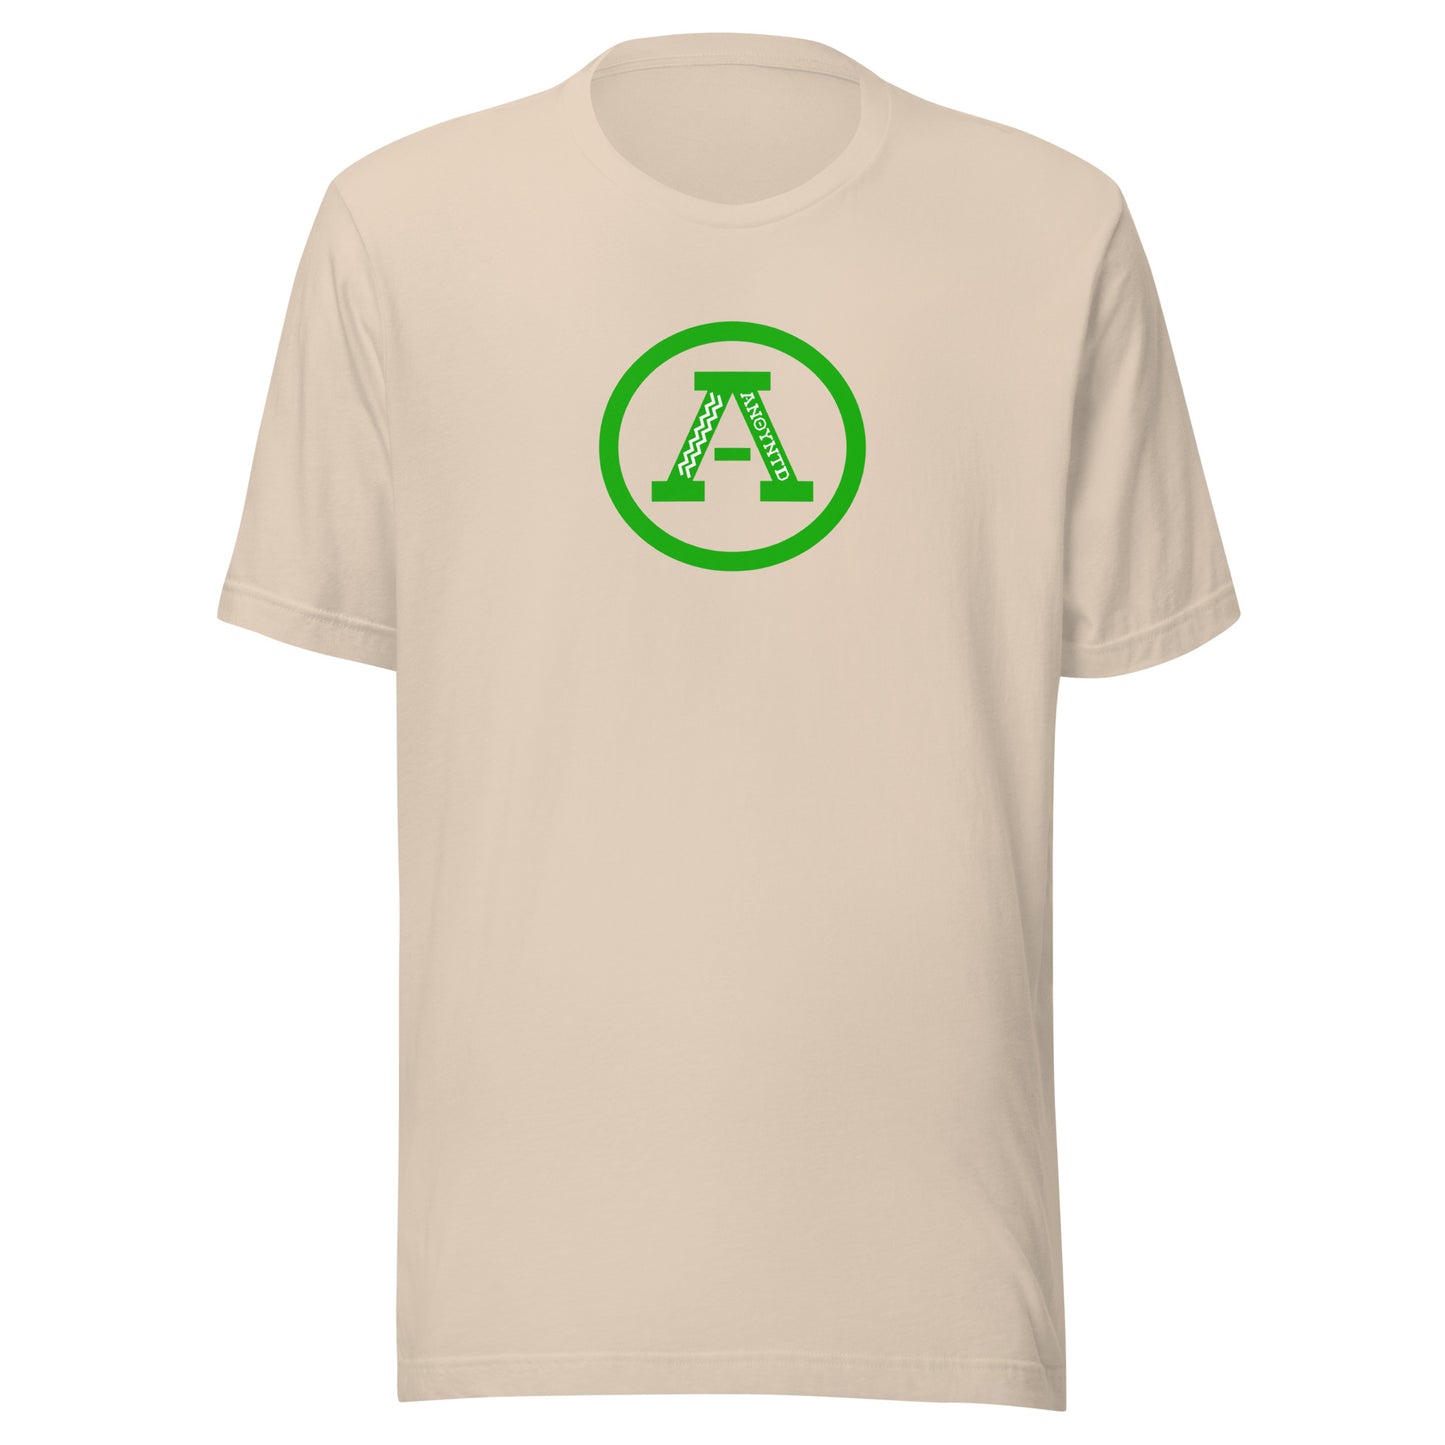 ANOYNTD Letterman (Gr) Unisex t-shirt